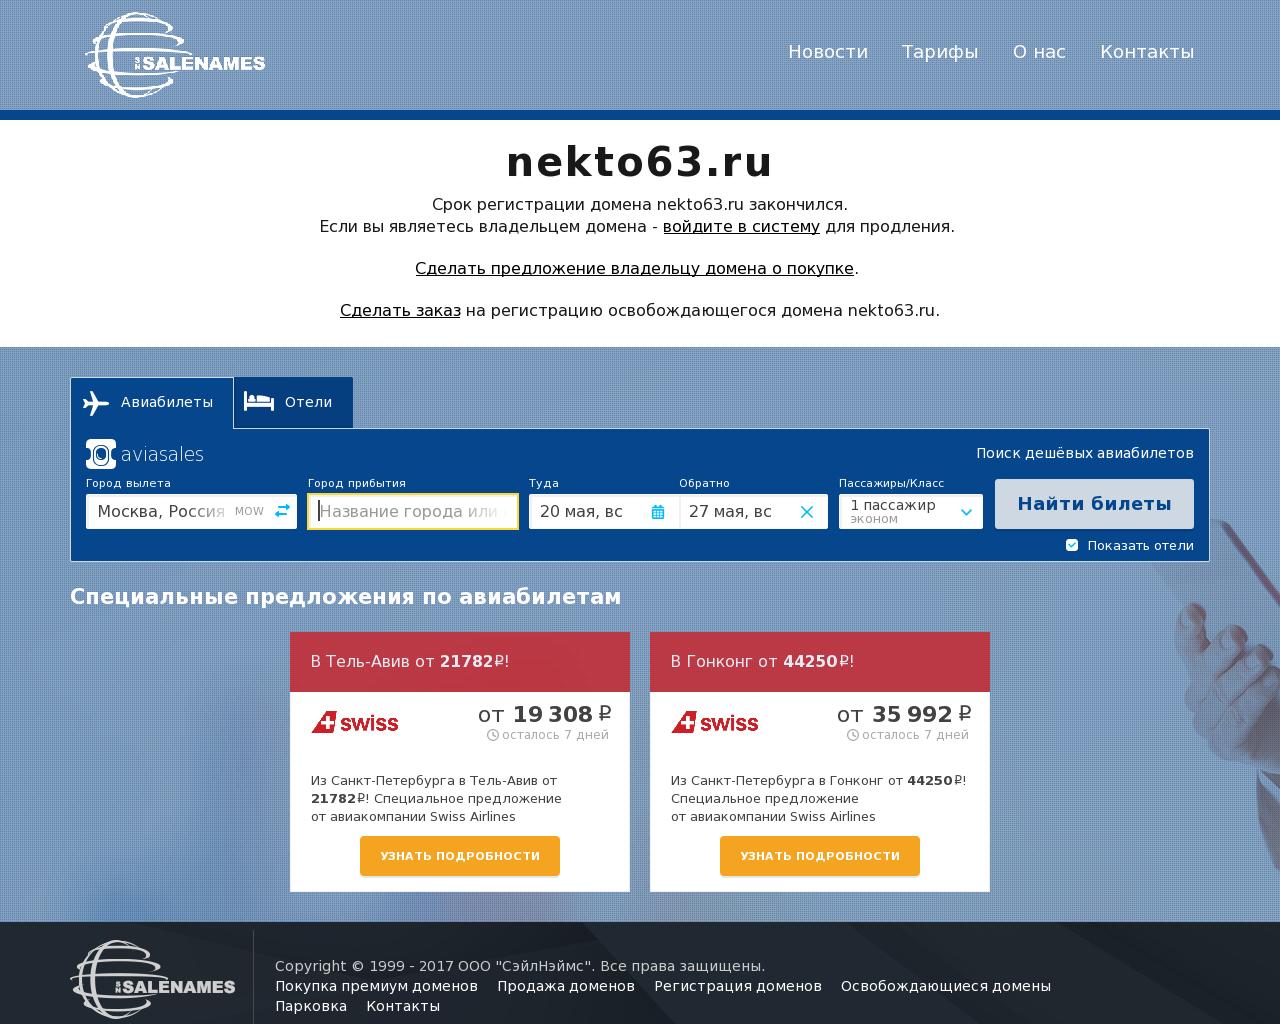 Изображение сайта nekto63.ru в разрешении 1280x1024